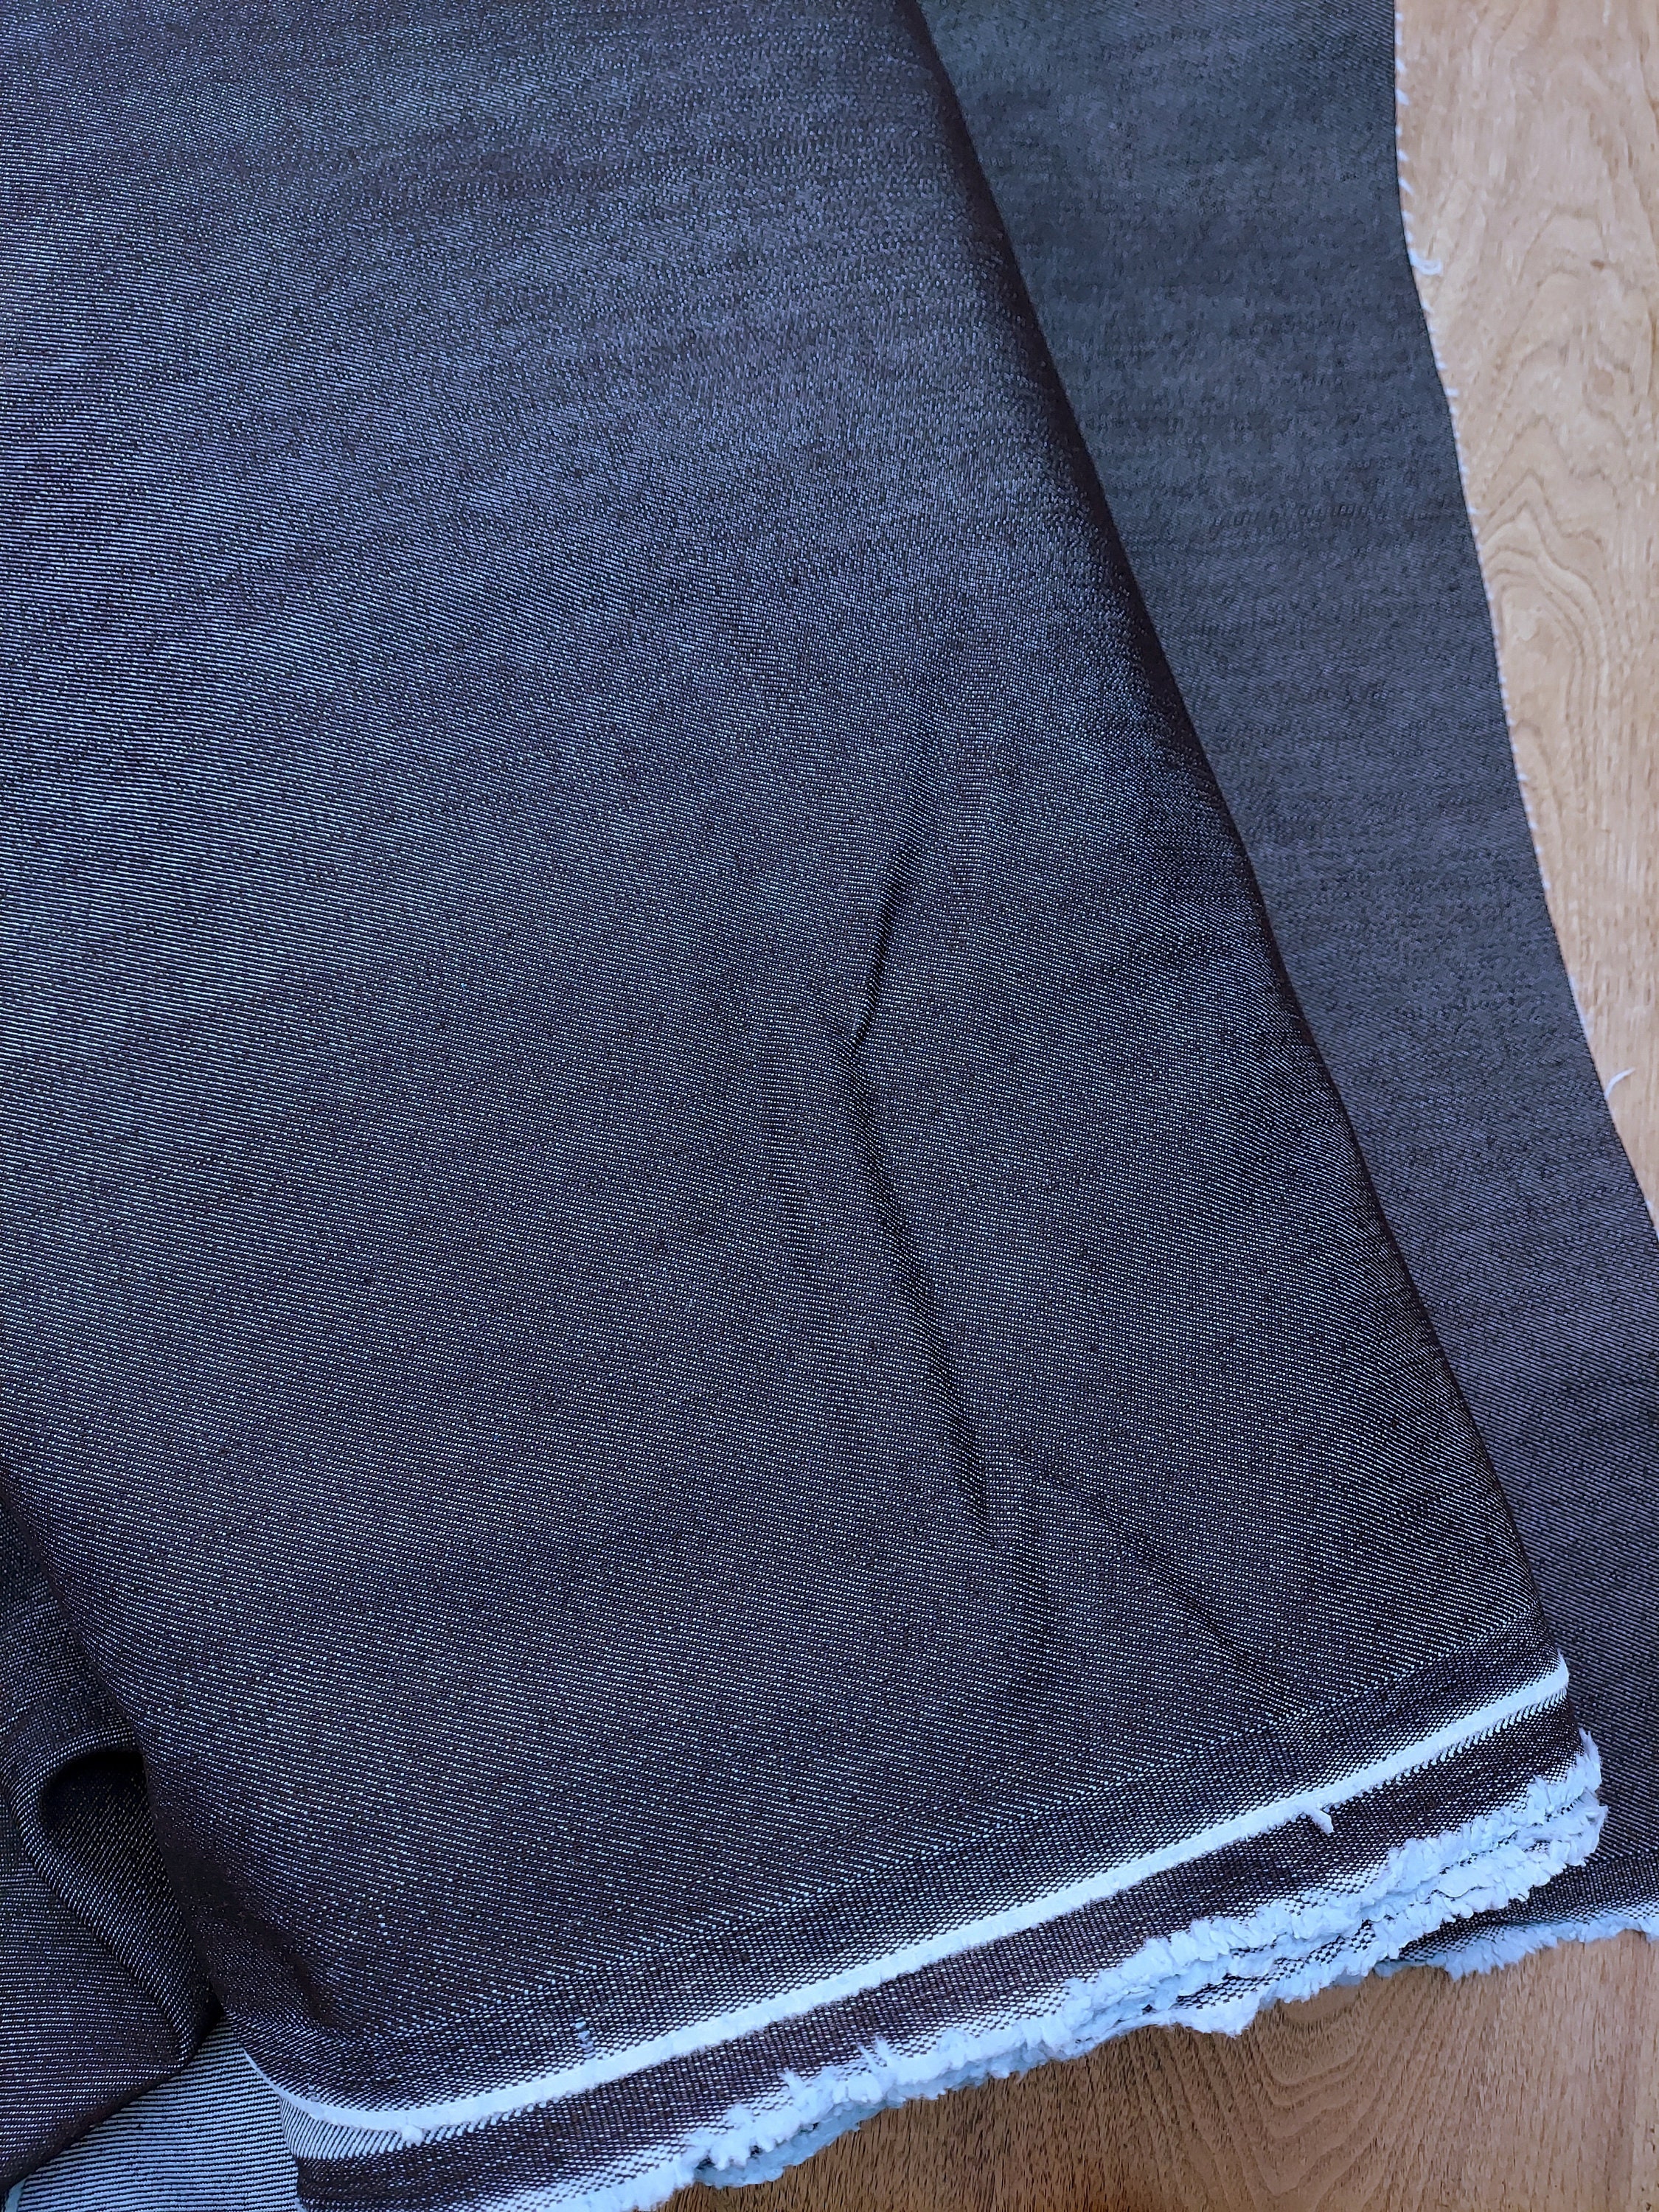 Stretch Denim Fabric, Washed Denim Fabric, Handwork Sewing Jacket Skirt  Shirt Dress Denim Fabric by the Half Yard 